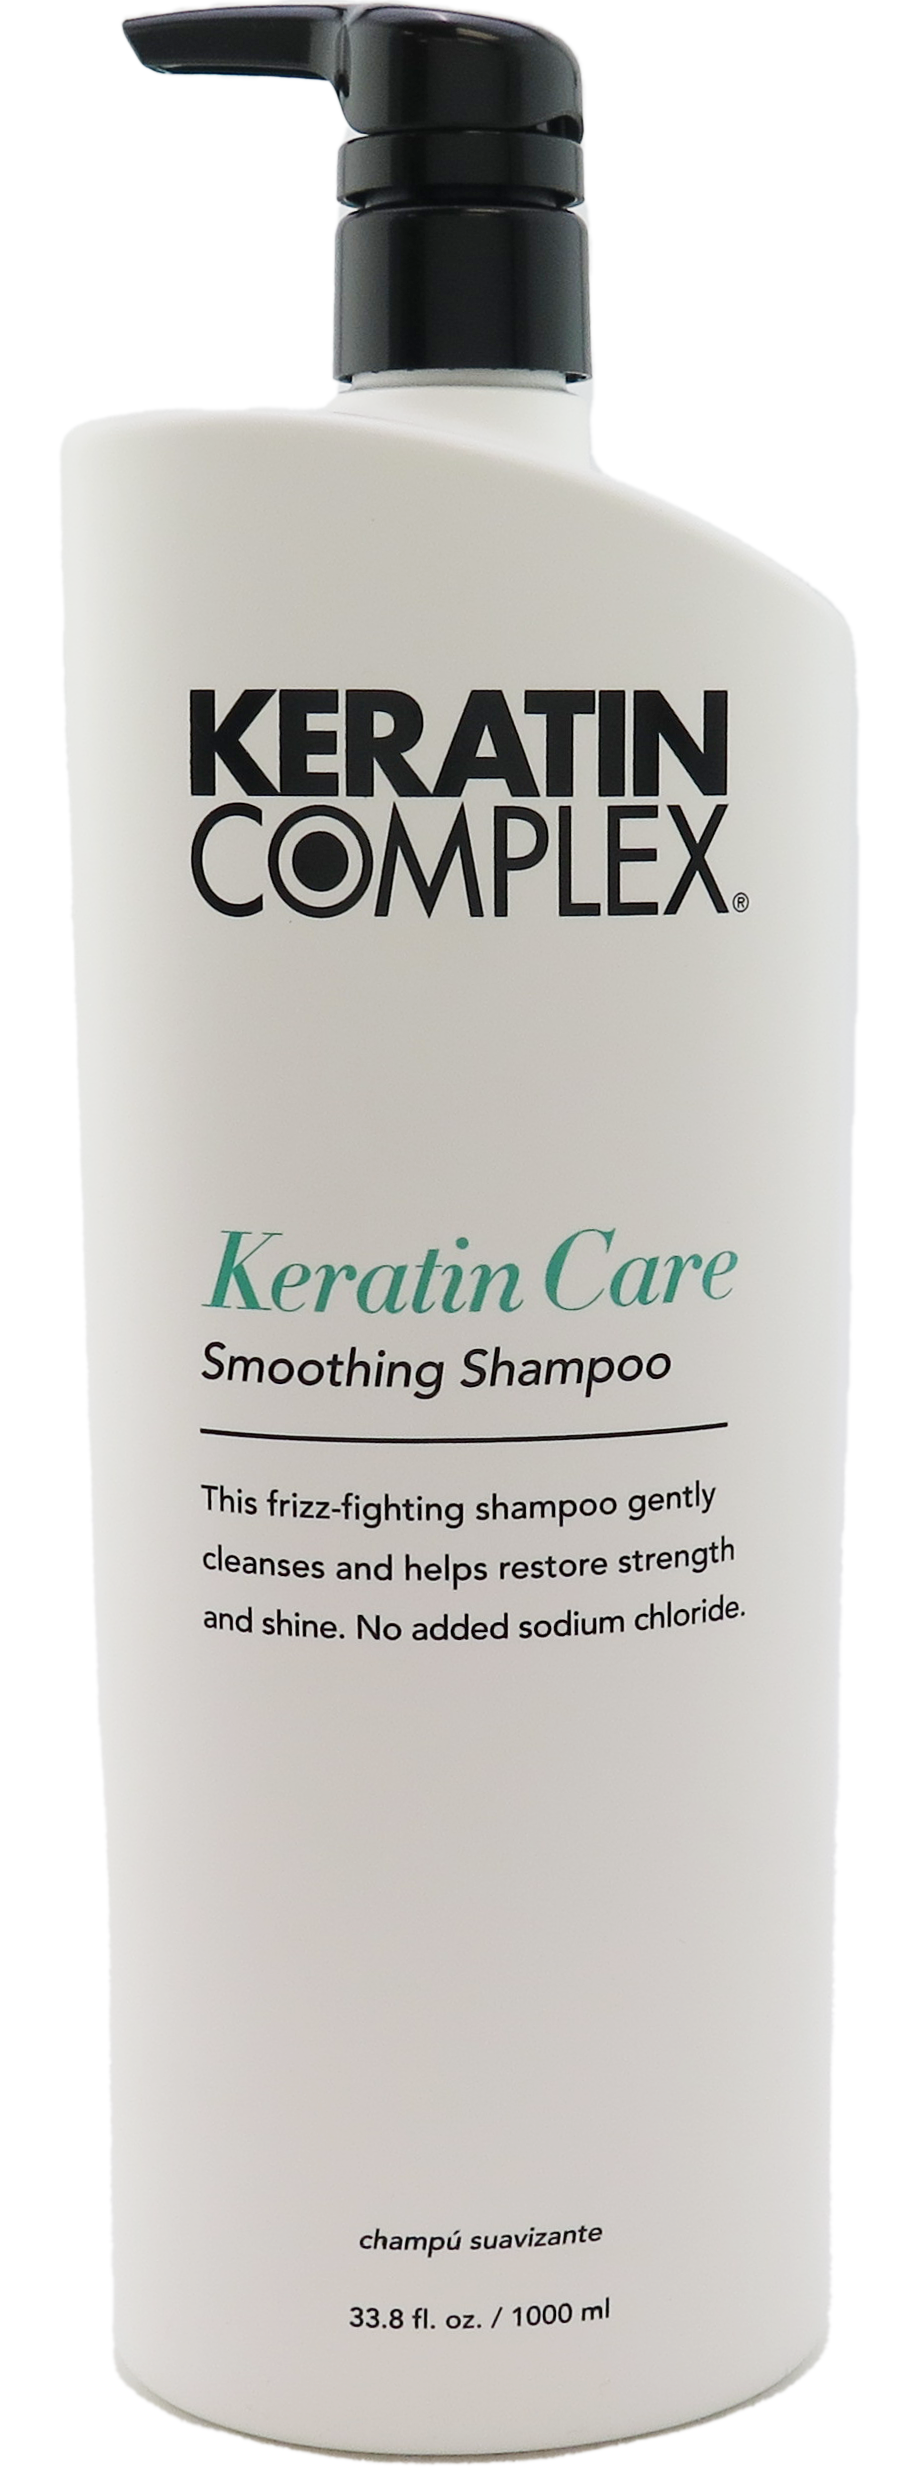 Keratin Care Smoothing Shampoo - 33.8oz / 1000ml